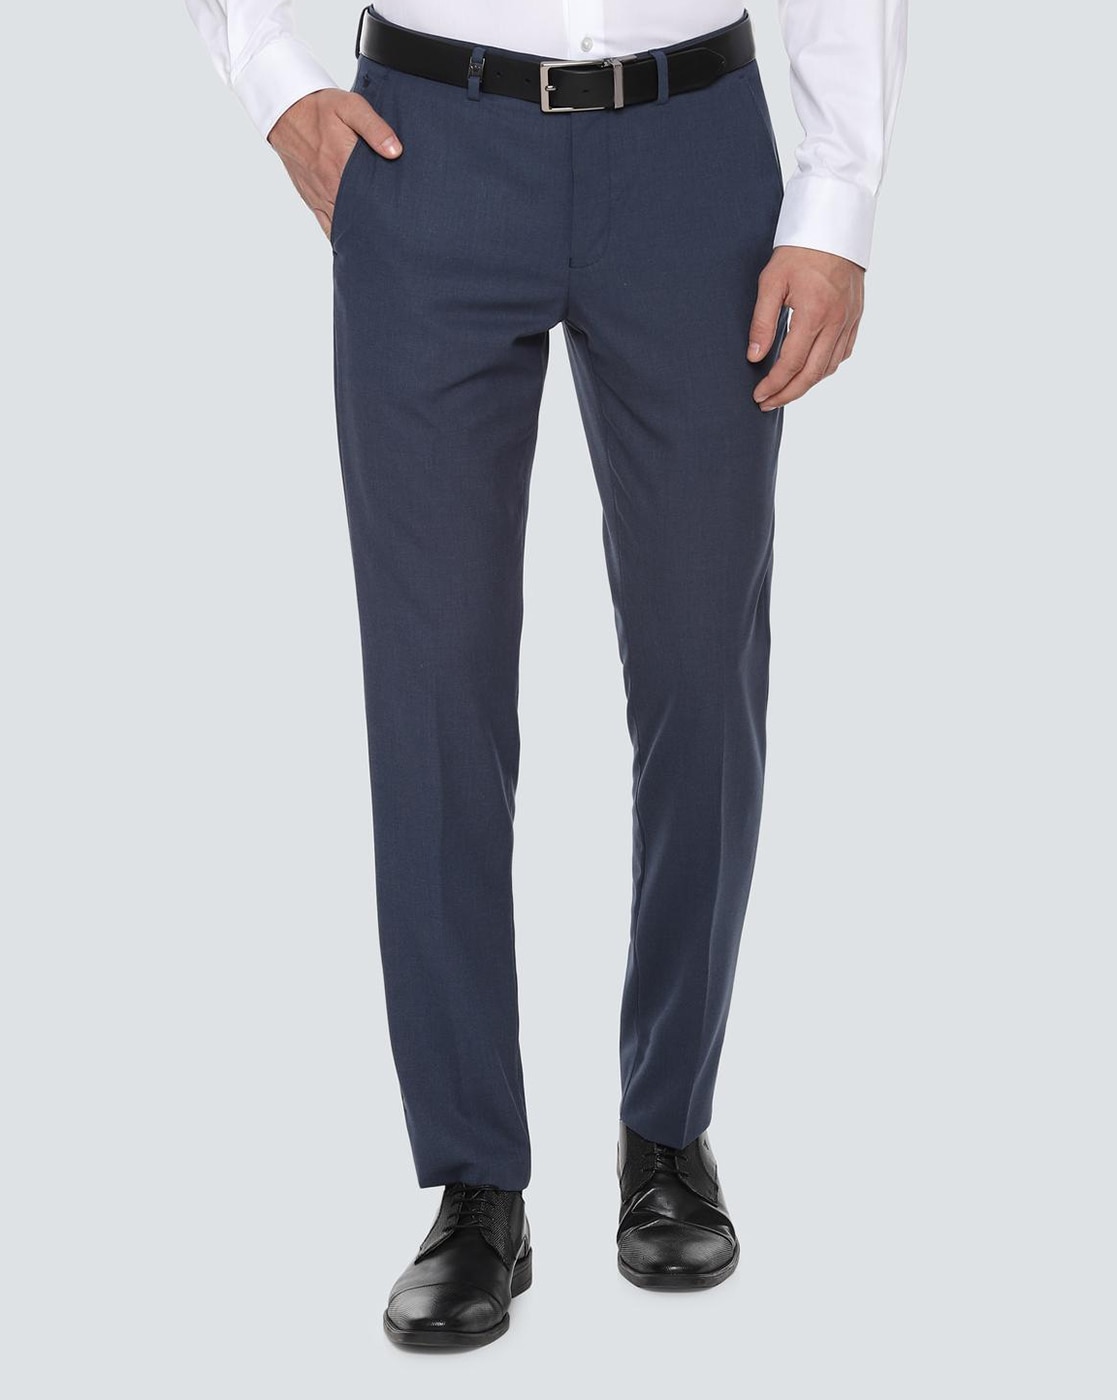 Jake Blue Double Pleated Buckled Slim Pants | Pantalon taille haute homme,  Mode élégante hommes, Styles de mode pour hommes